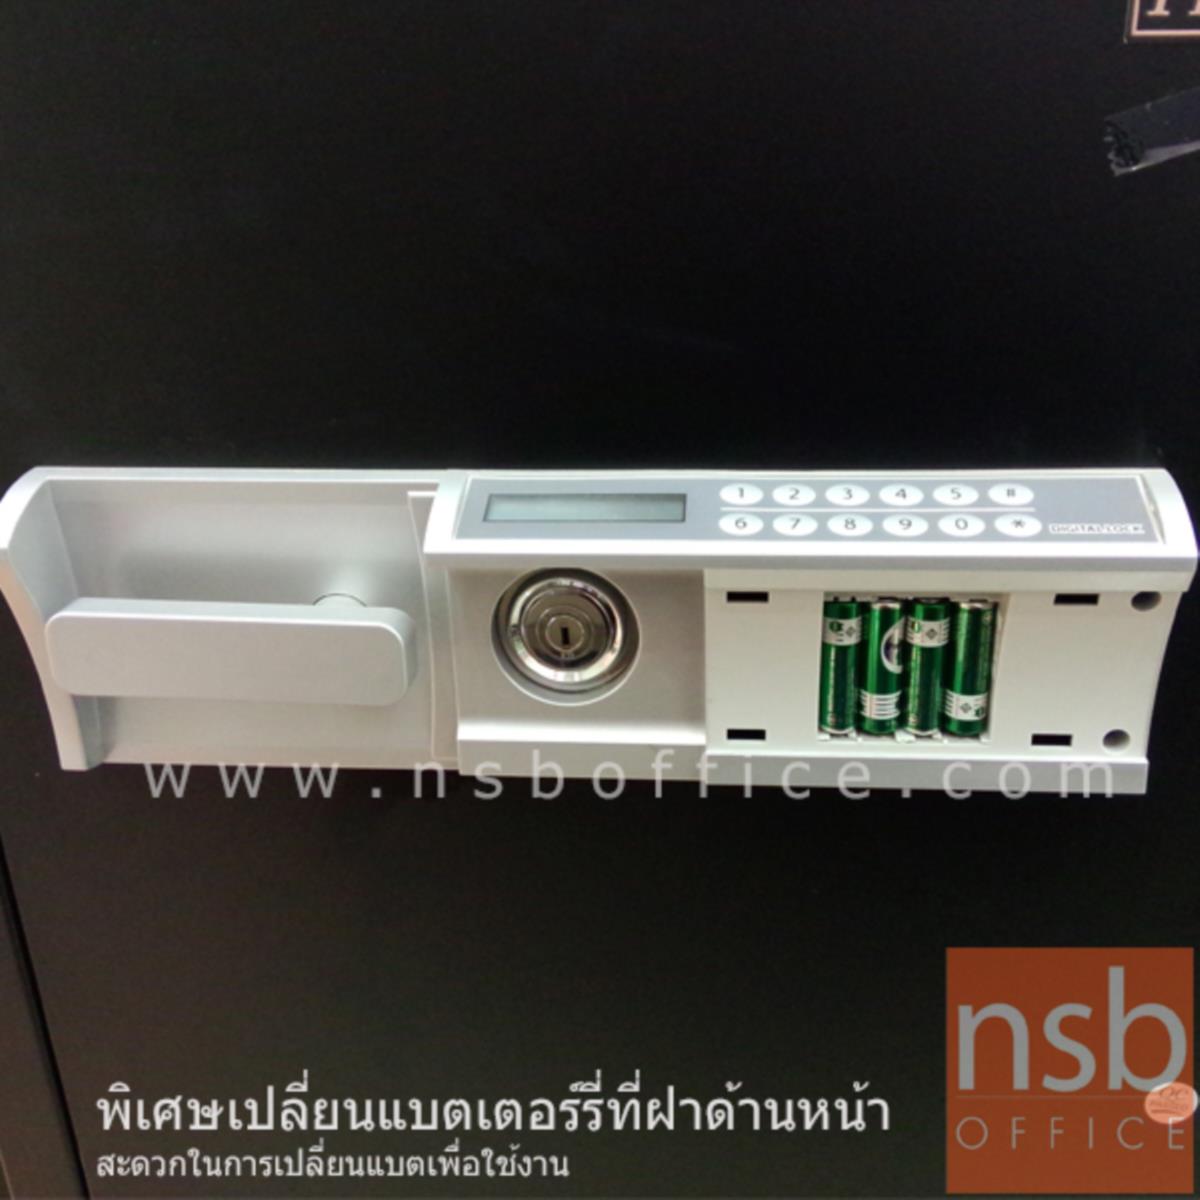 ตู้เซฟดิจิตอล 50 กก. แนวนอน รุ่น PRESIDENT-SS1D2 มี 1 กุญแจ 1 รหัส (รหัสใช้กดห